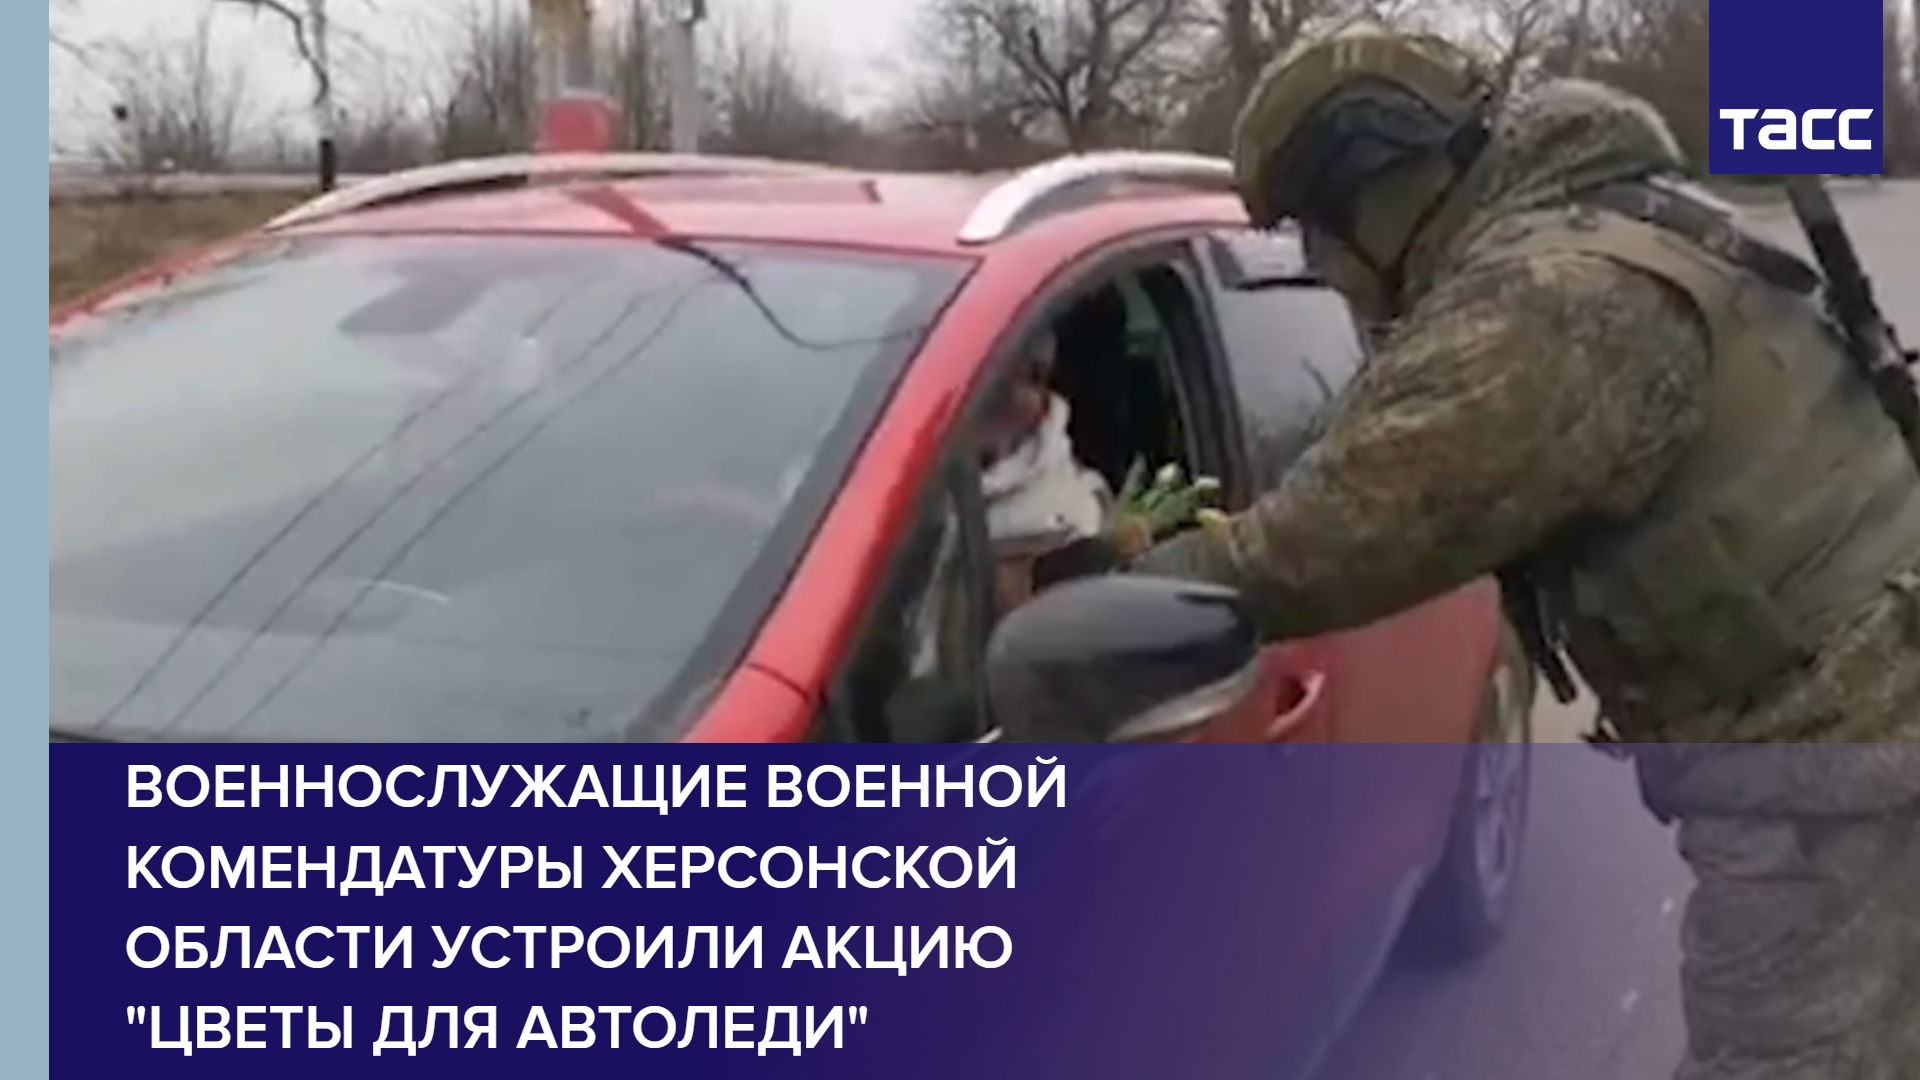 Военнослужащие военной комендатуры Херсонской области устроили акцию "Цветы для автоледи" #shorts